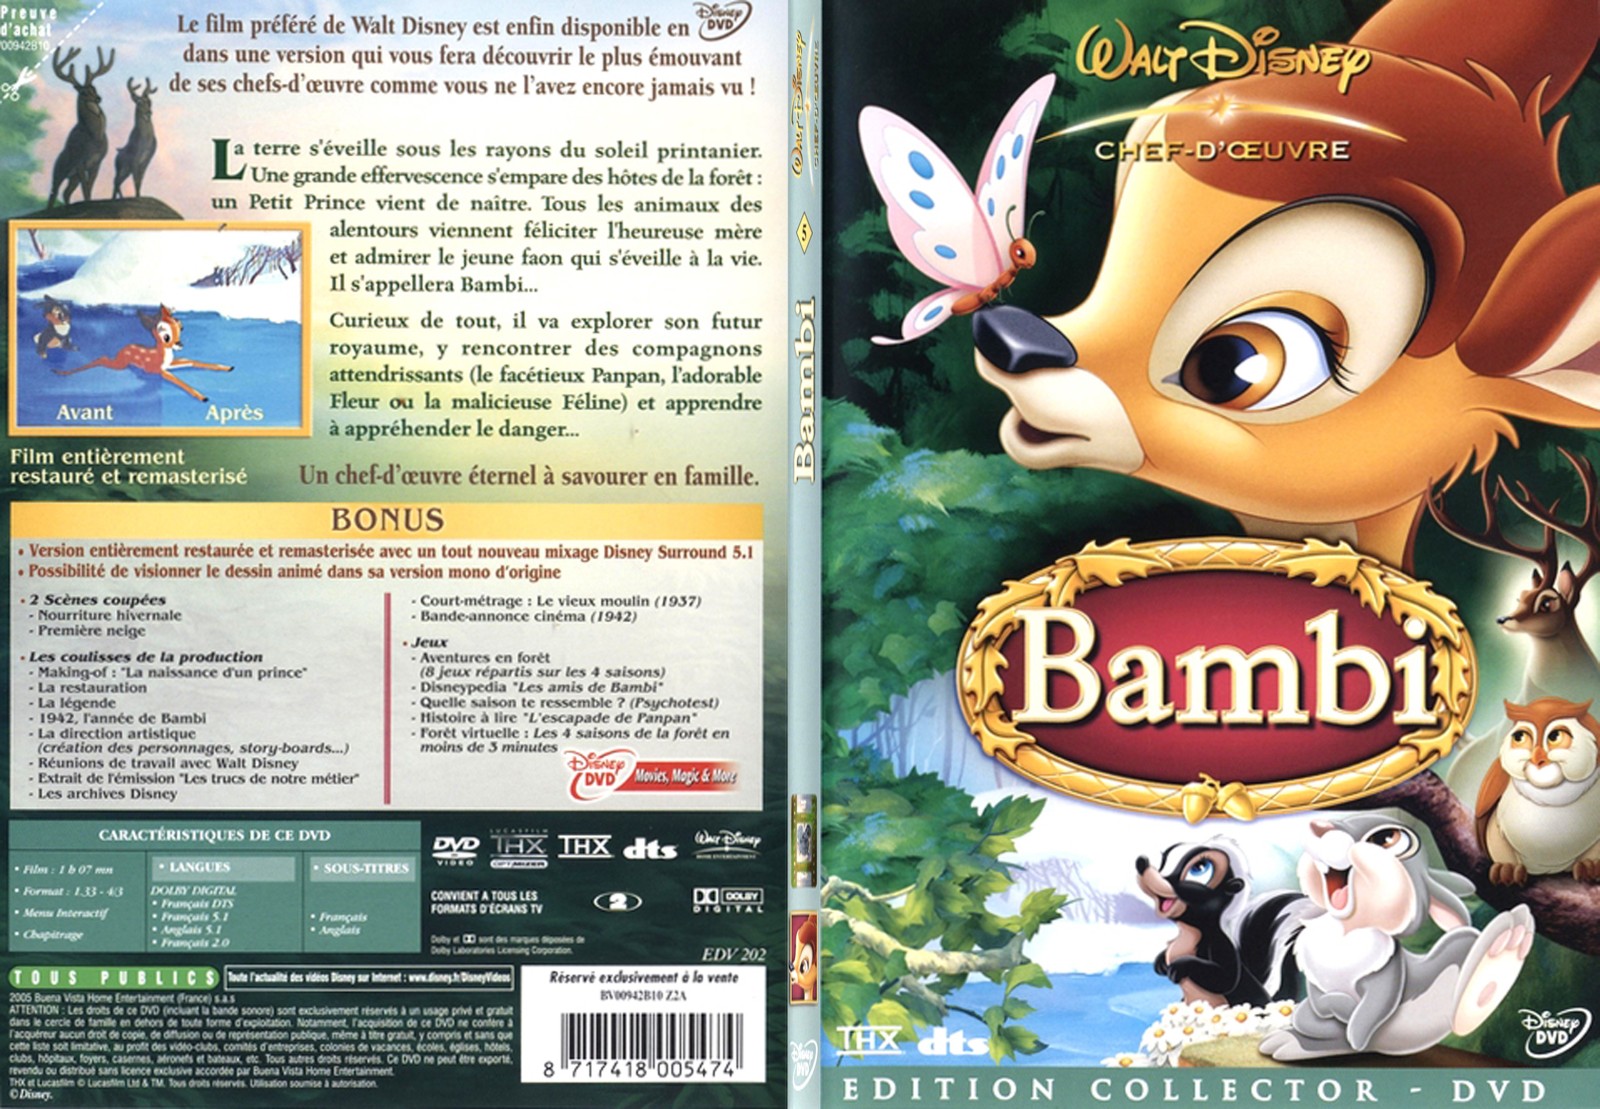 Jaquette DVD Bambi - SLIM v3